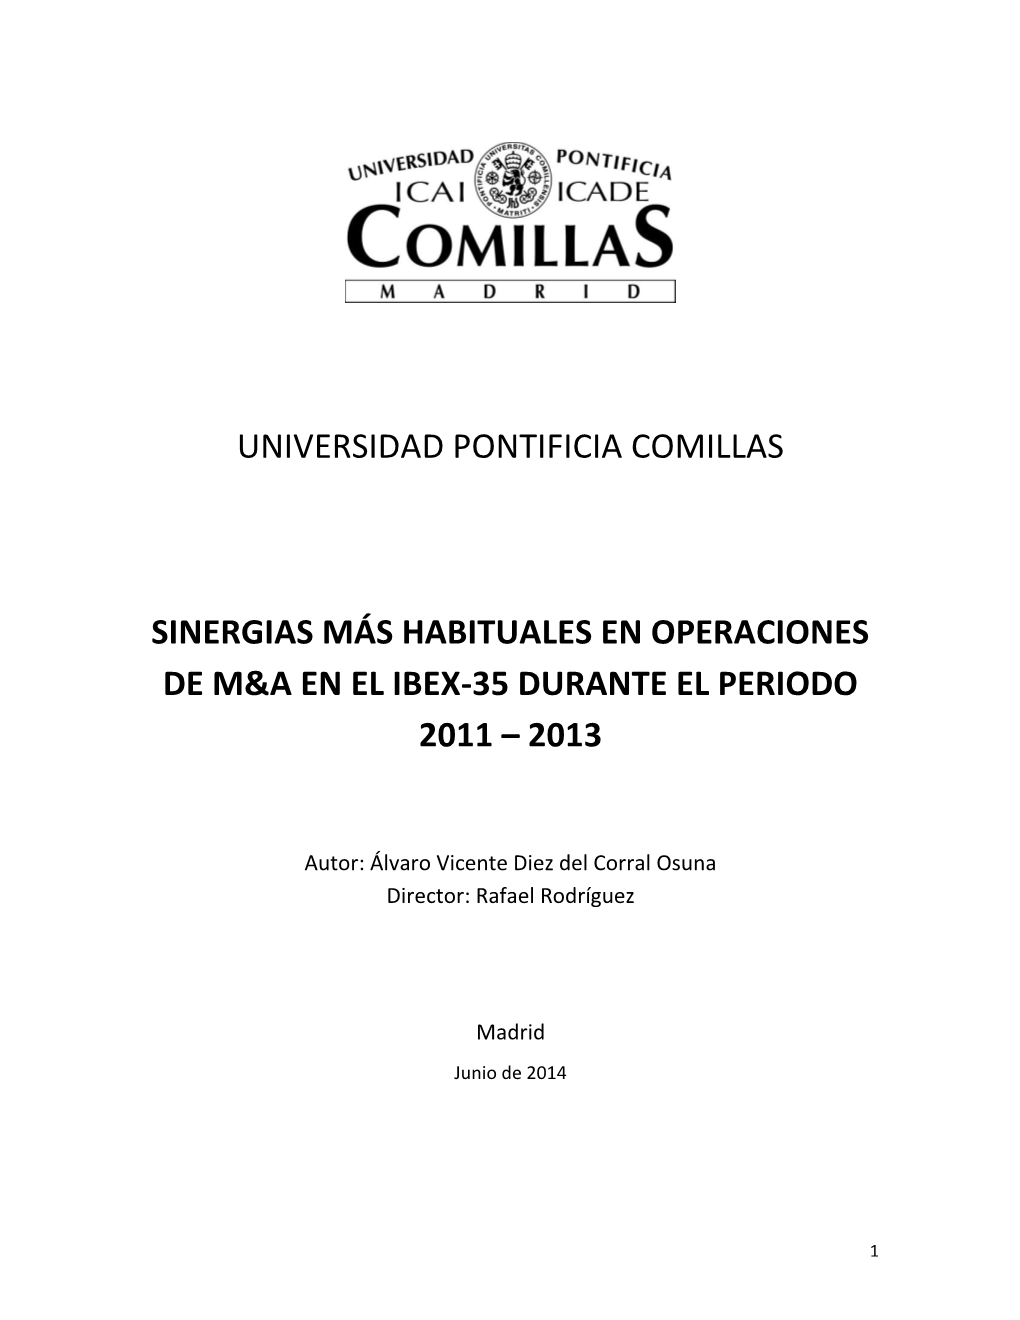 Universidad Pontificia Comillas Sinergias Más Habituales En Operaciones De M&A En El Ibex-35 Durante El Periodo 2011